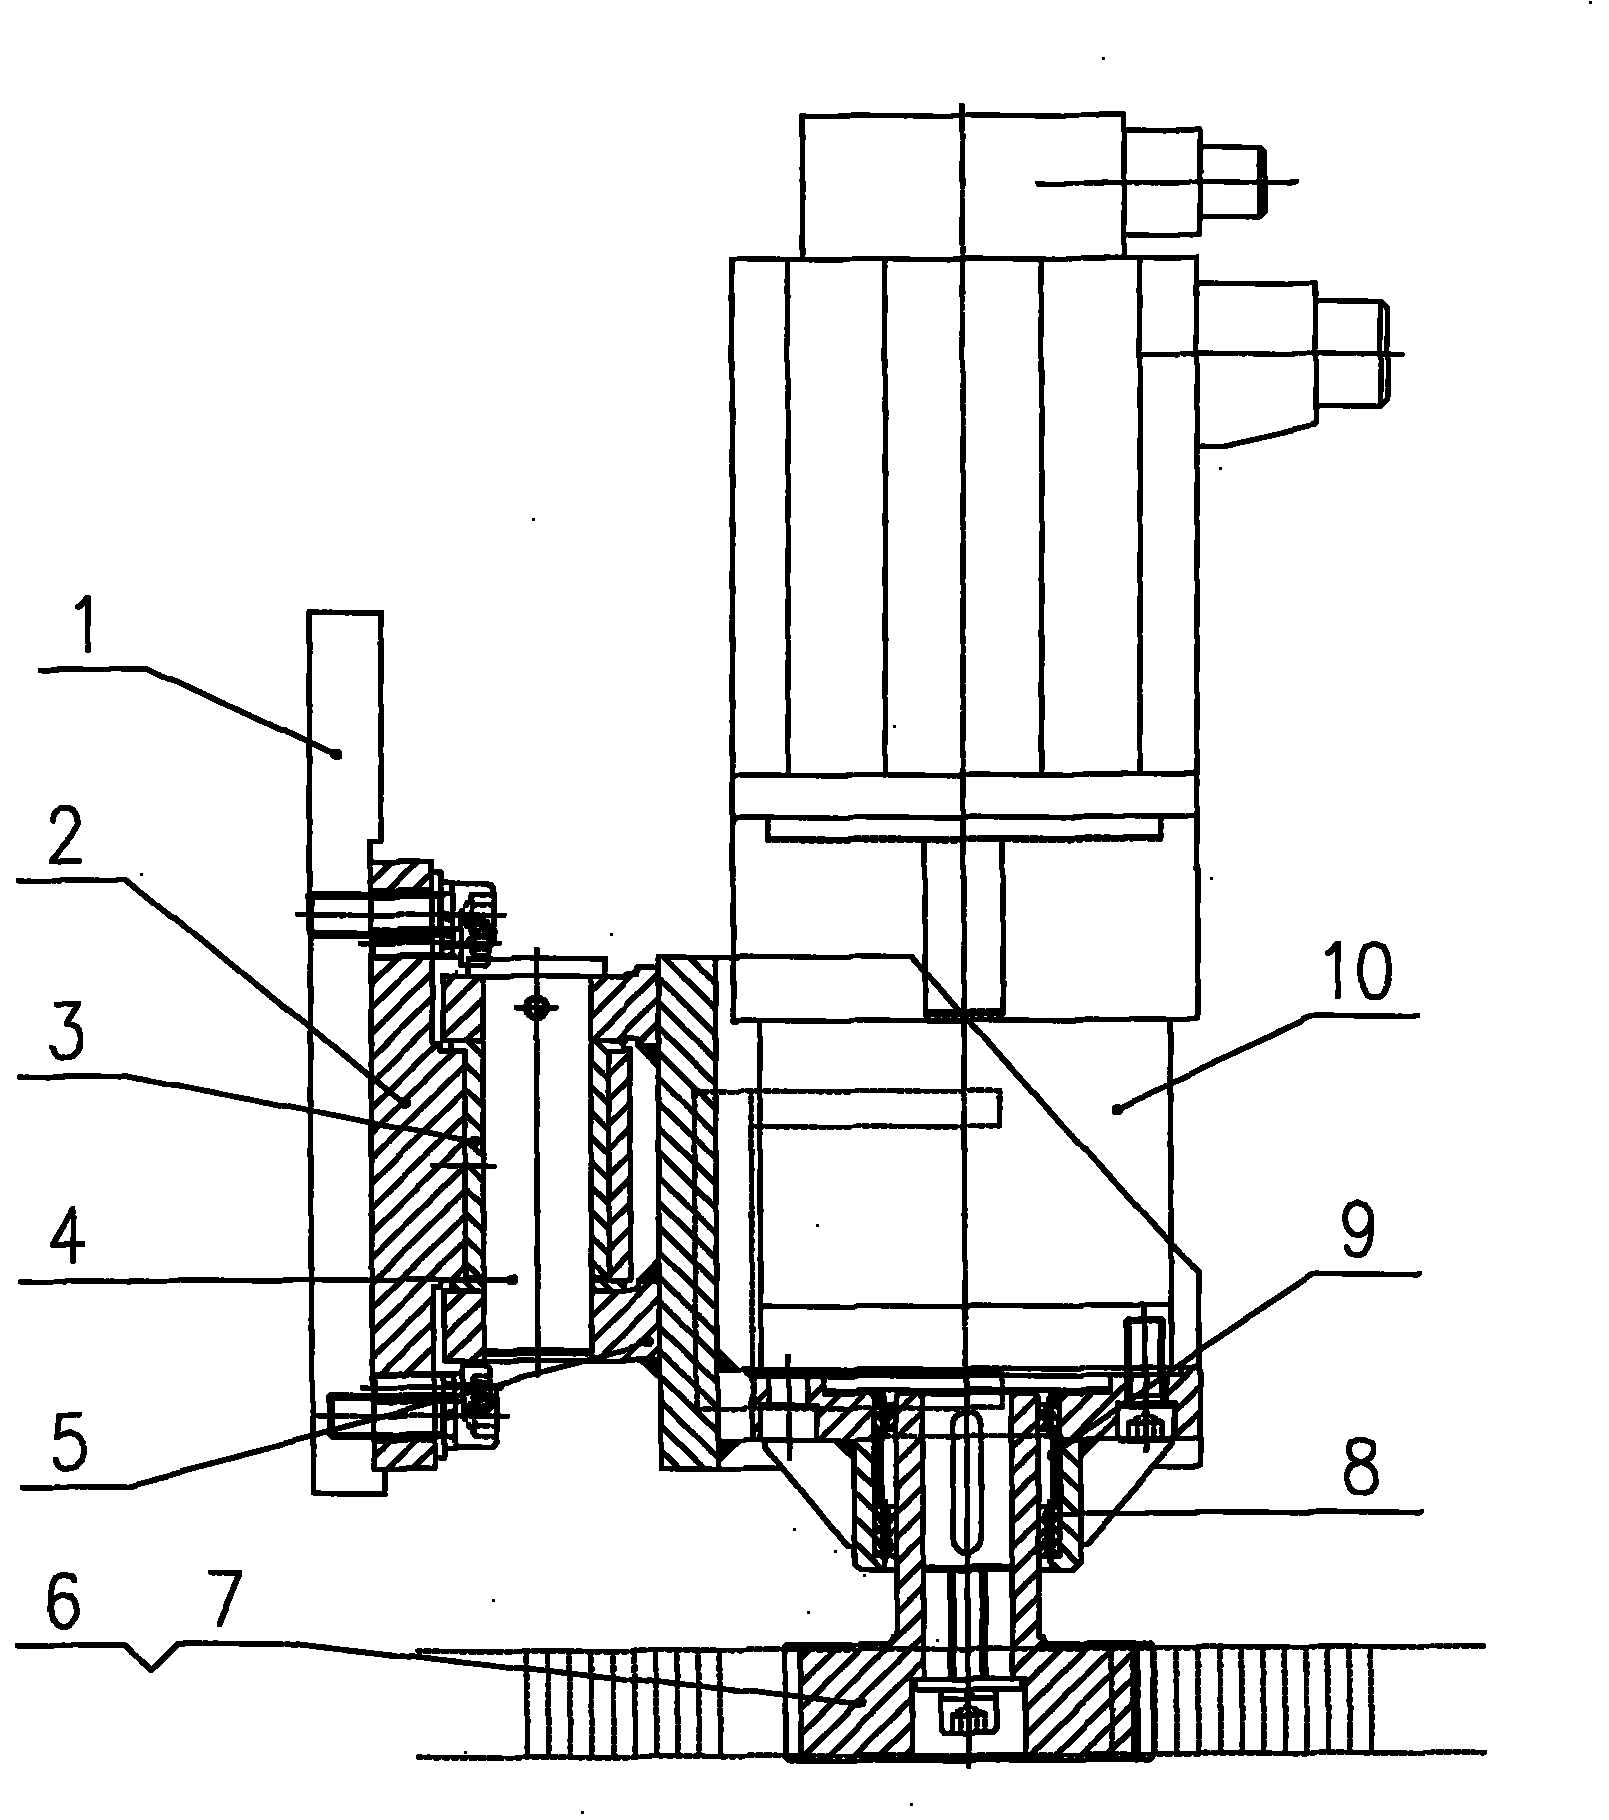 Transmission gap adjusting mechanism of gantry numerical control cutting machine